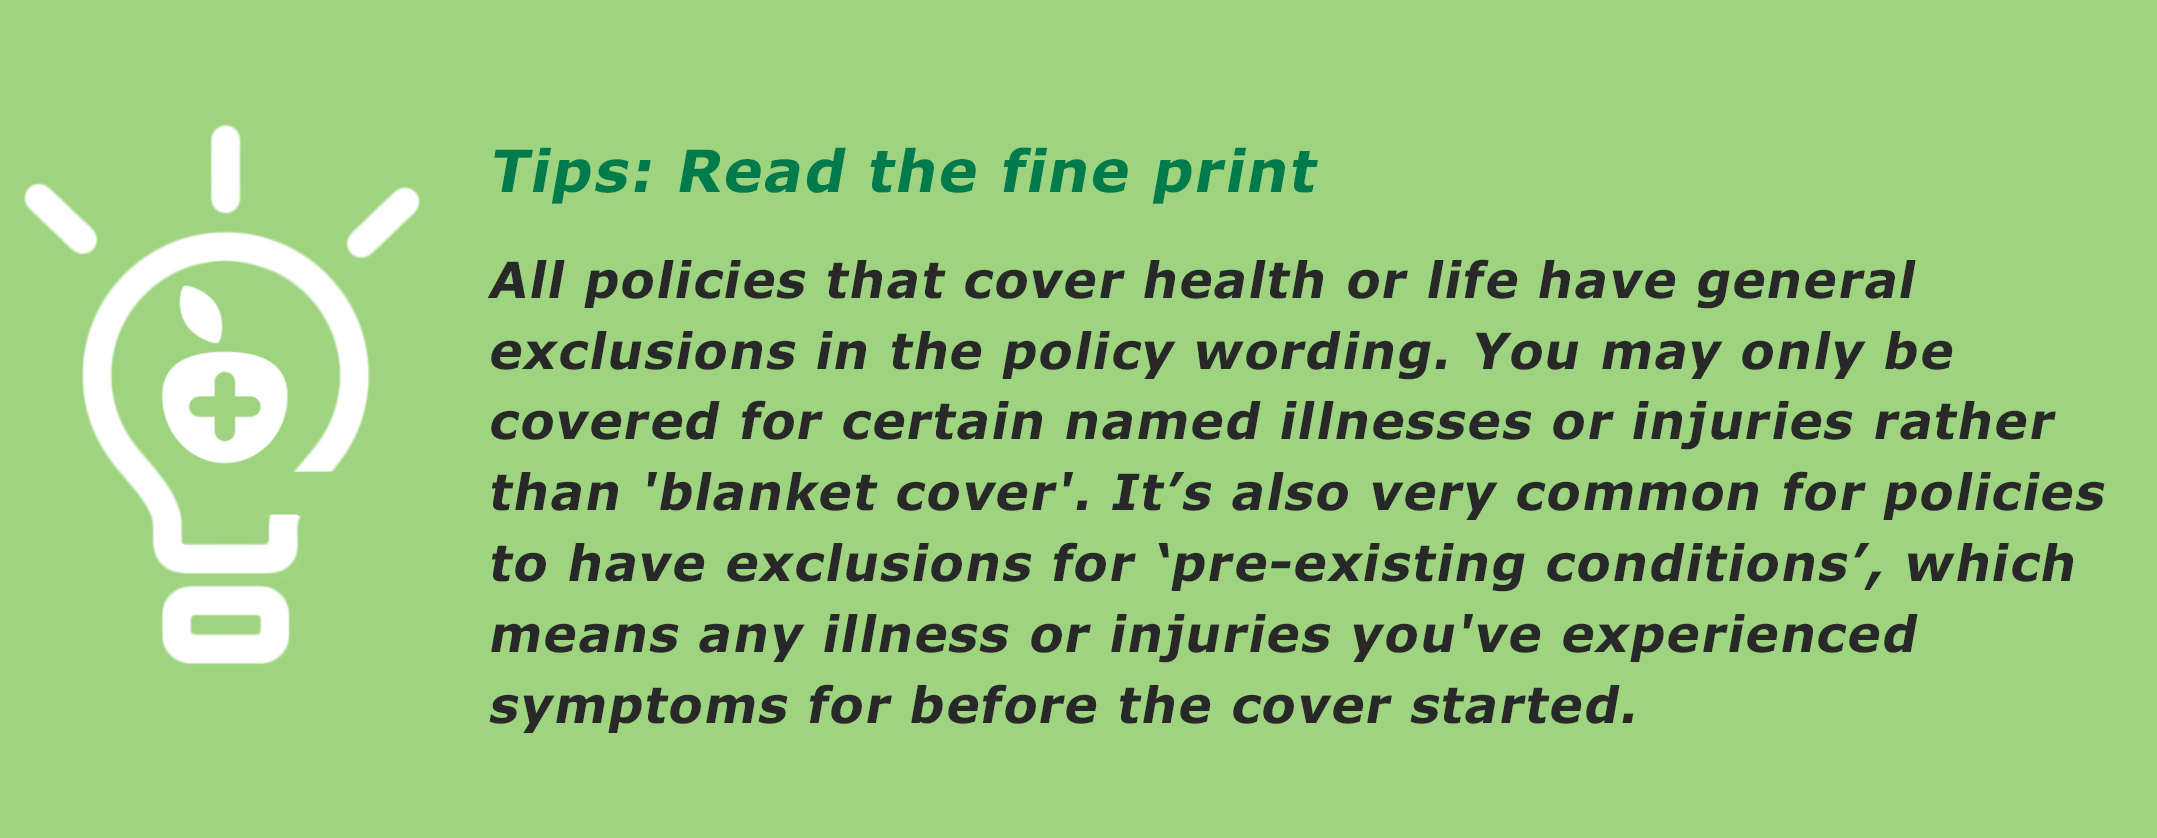 insurance guide - tip 5